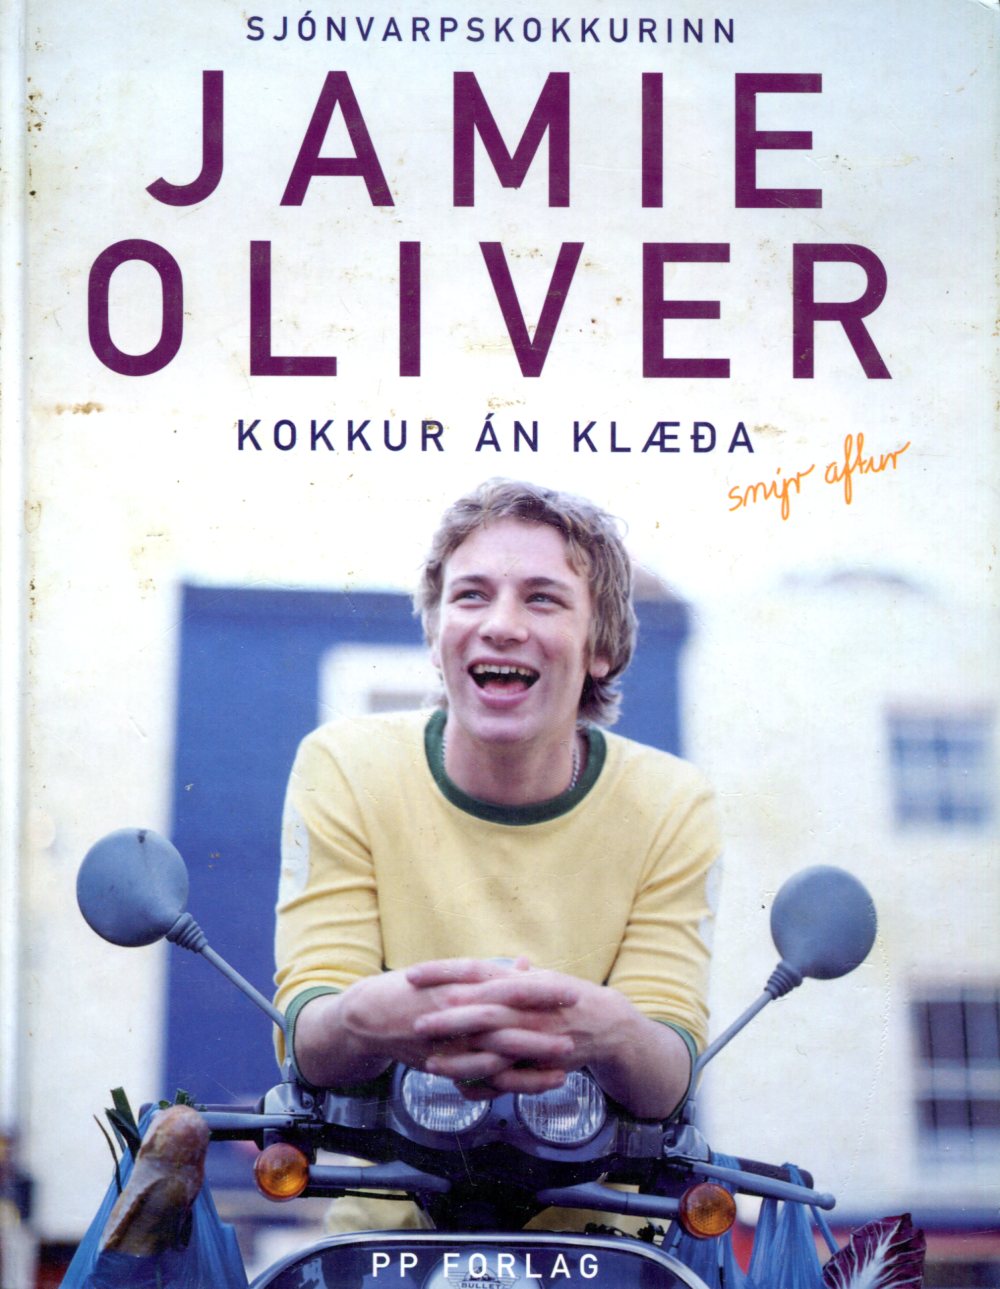 Jamie Oliver kokkur án klæða snýr aftur - Sjónvarpsþáttaröð frá BBC